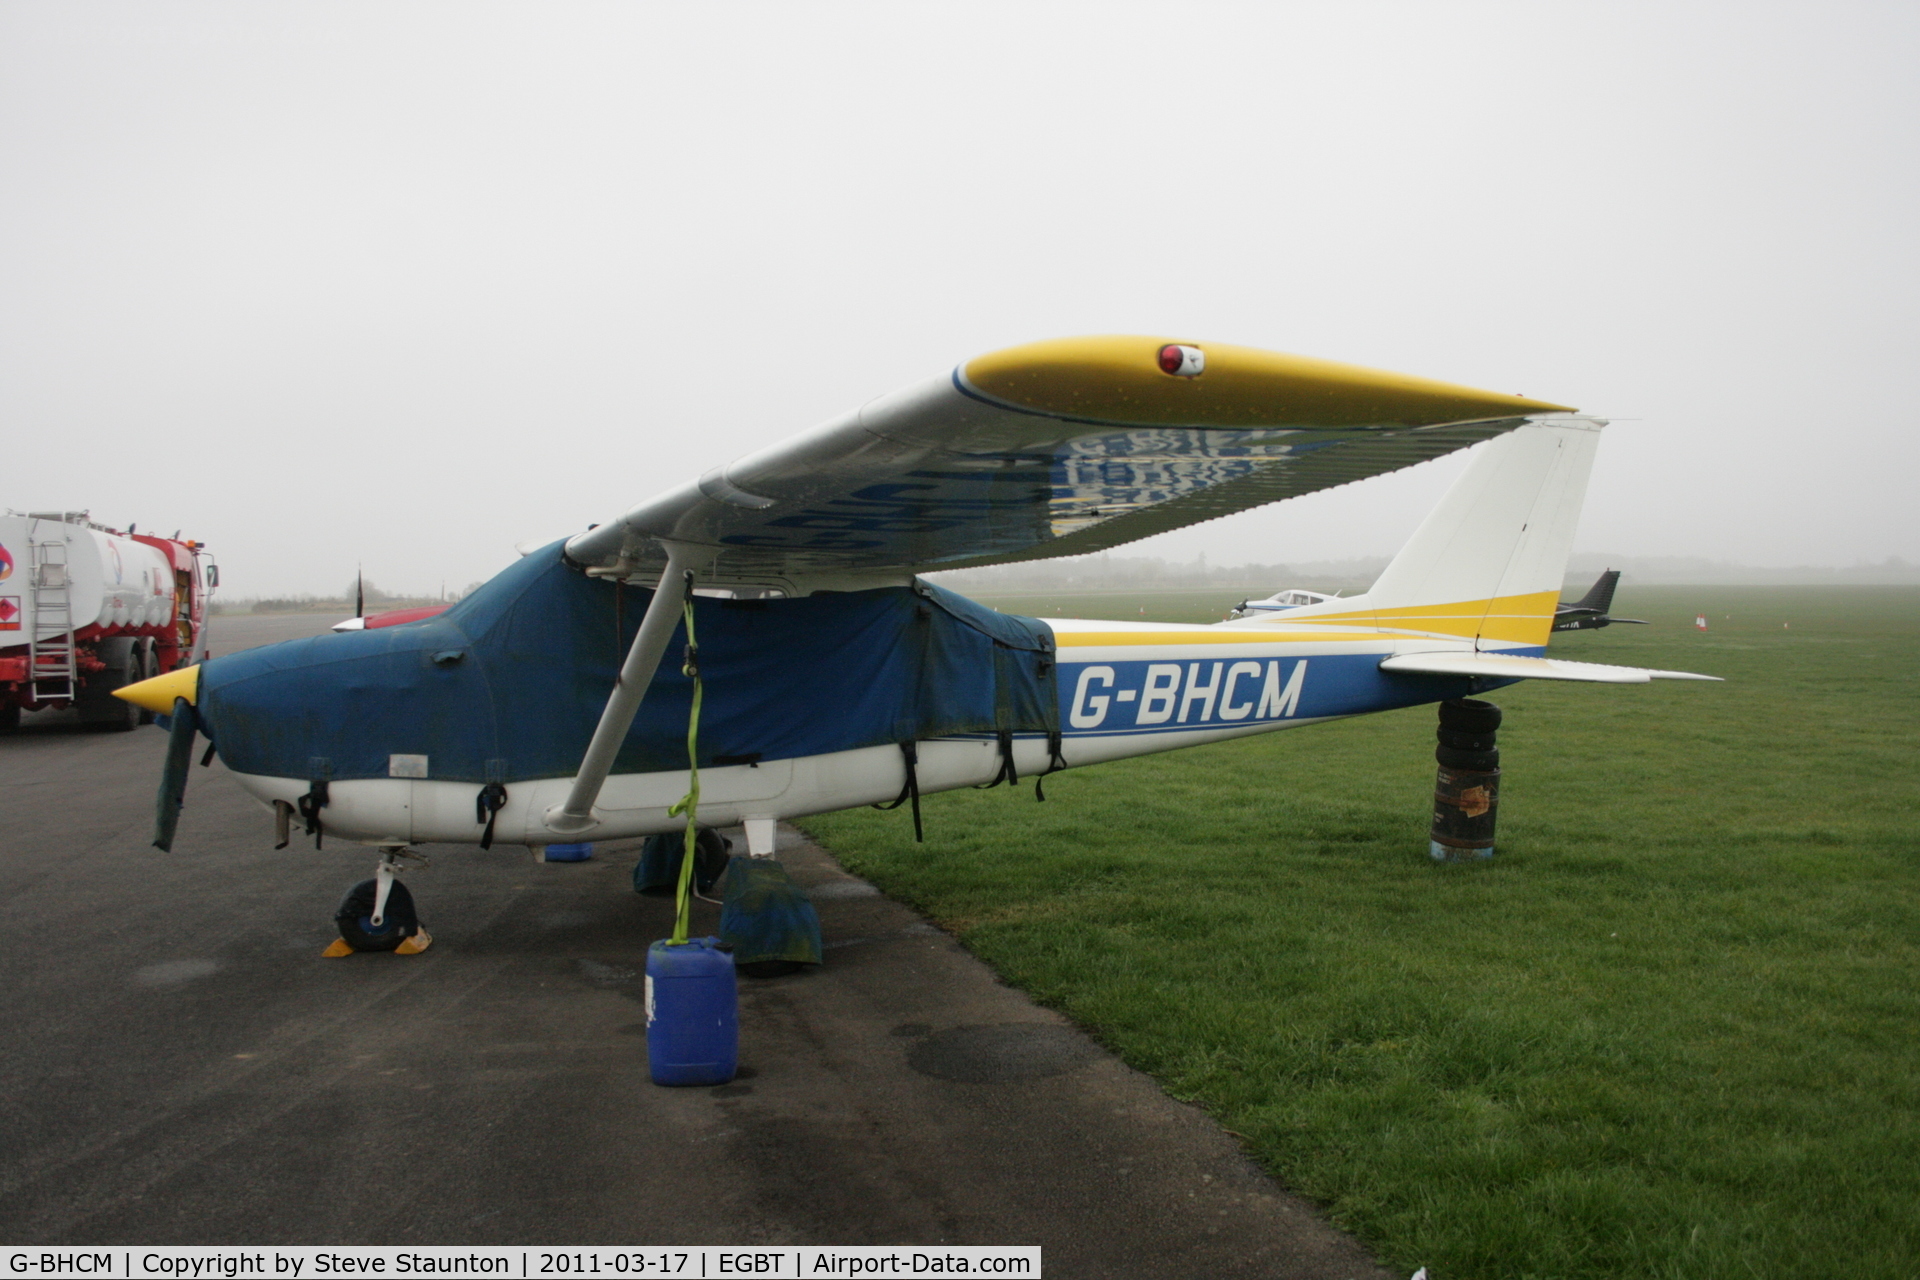 G-BHCM, 1967 Reims F172H Skyhawk C/N 0468, Taken at Turweston Airfield March 2010